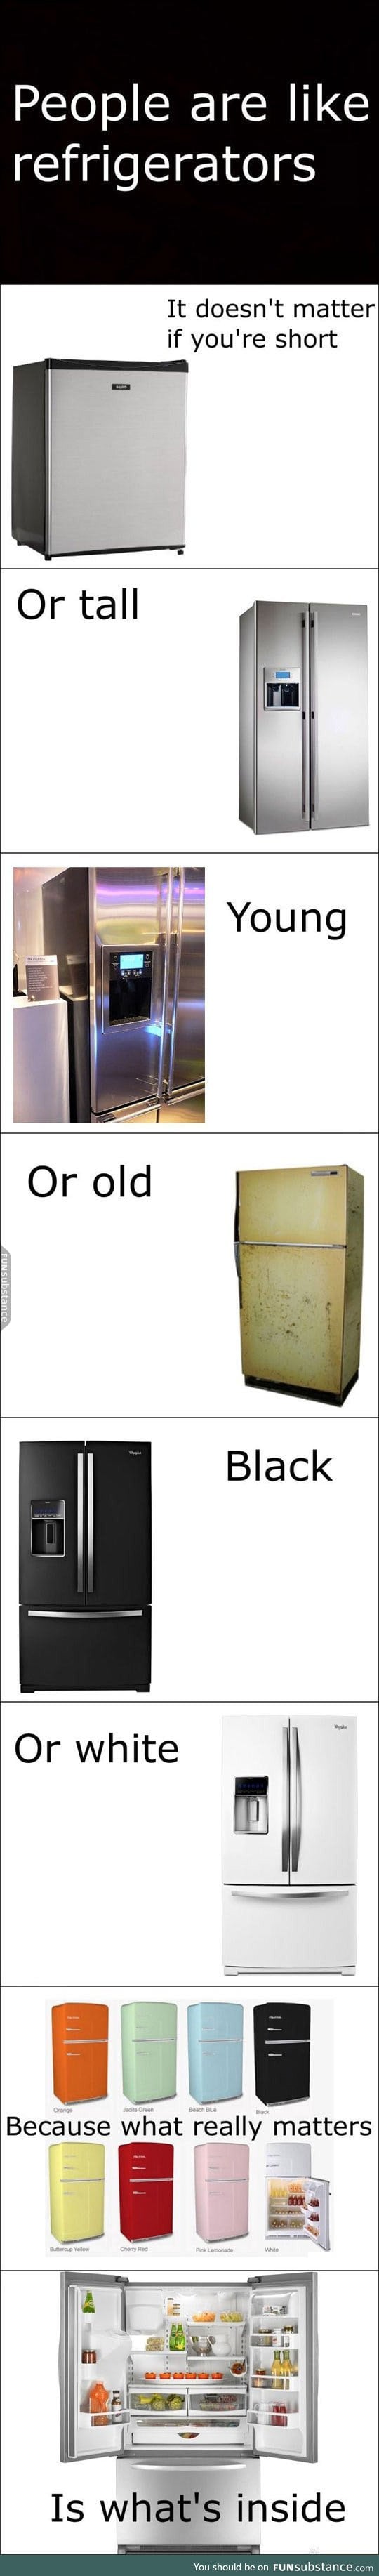 People are just like refrigerators